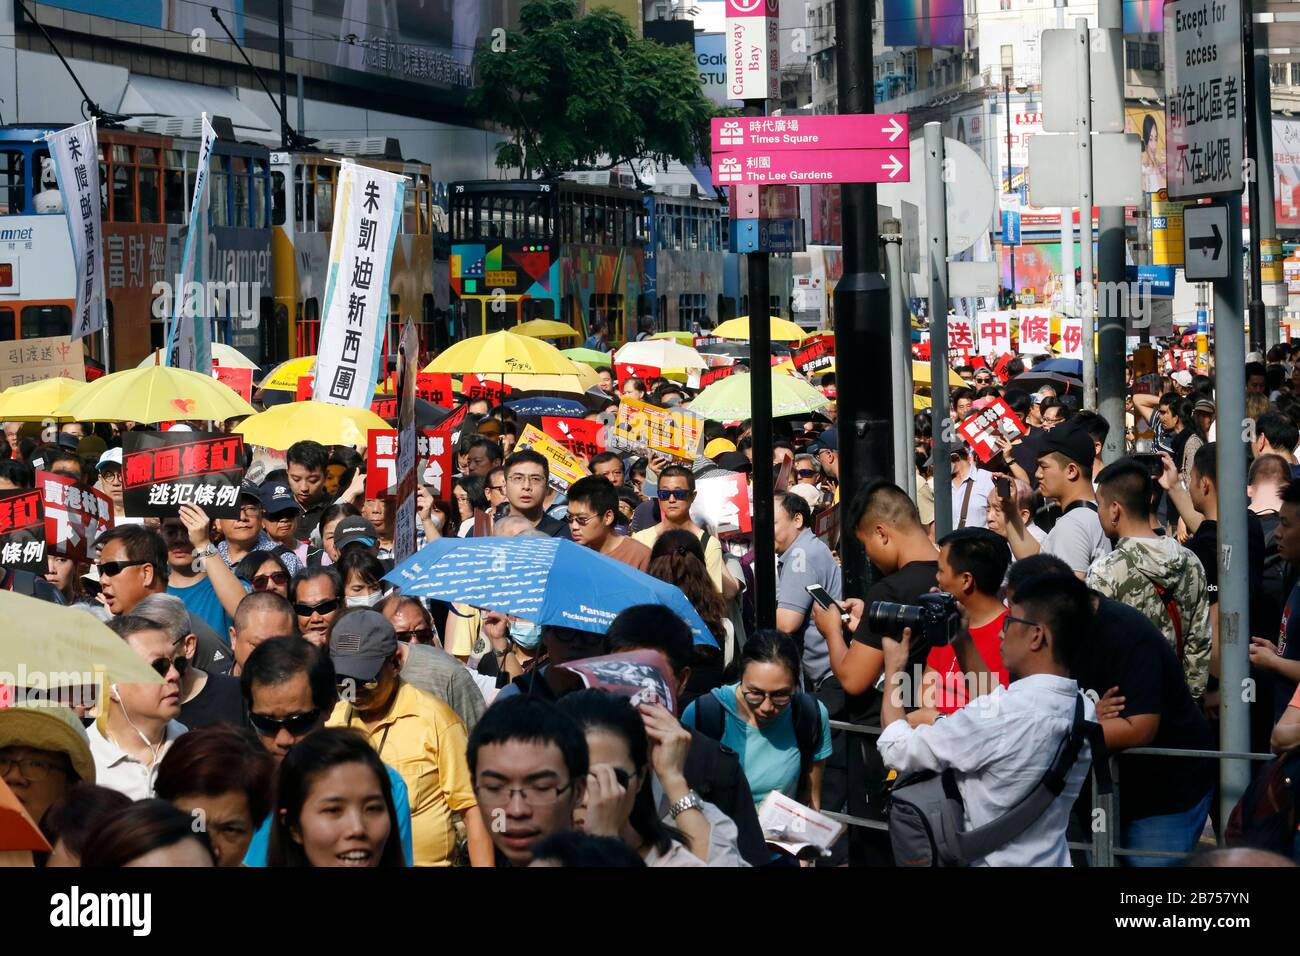 Hong Kongers, pro democracia, participa en una marcha contra una propuesta de ley de extradición en Hong Kong, China, del 28 al 28 de abril de 2019. A principios de abril, el Gobierno de Hong Kong presentó un proyecto de enmienda que permitiría la transferencia de fugitivos, caso por caso, a cualquier jurisdicción con la que Hong Kong no tuviera un acuerdo, incluidos China continental, Macao y Taiwán. Foto de stock